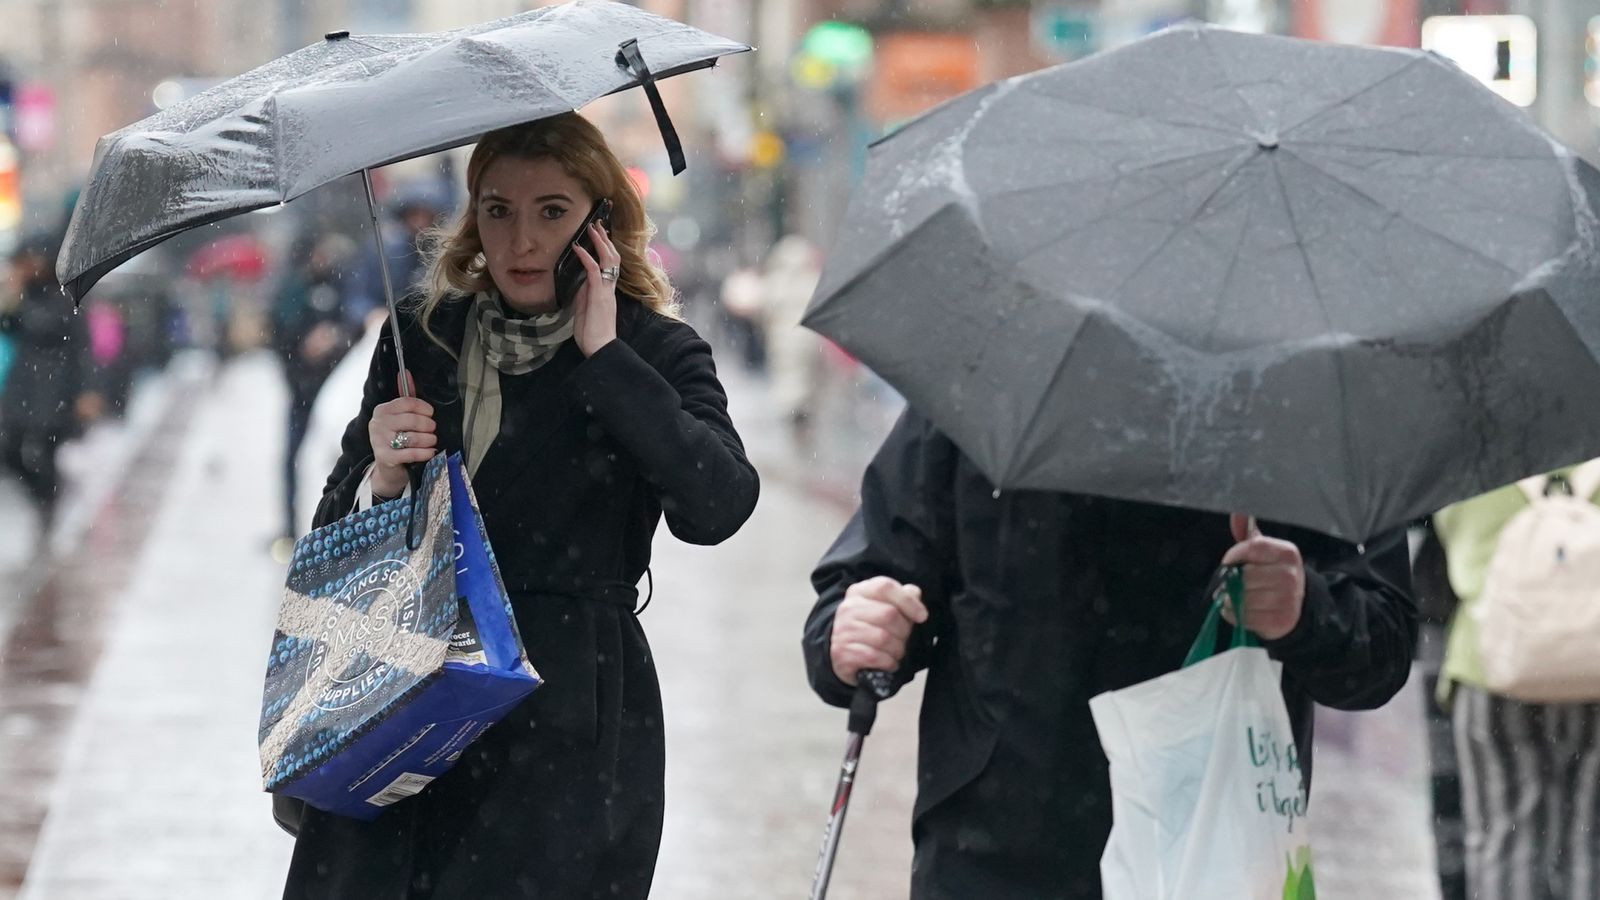 Погода в Великобритании: Метеорологическое бюро выпустило янтарное предупреждение об опасности для жизни в Шотландии, поскольку ожидаются сильный дождь и наводнение |  Новости Великобритании